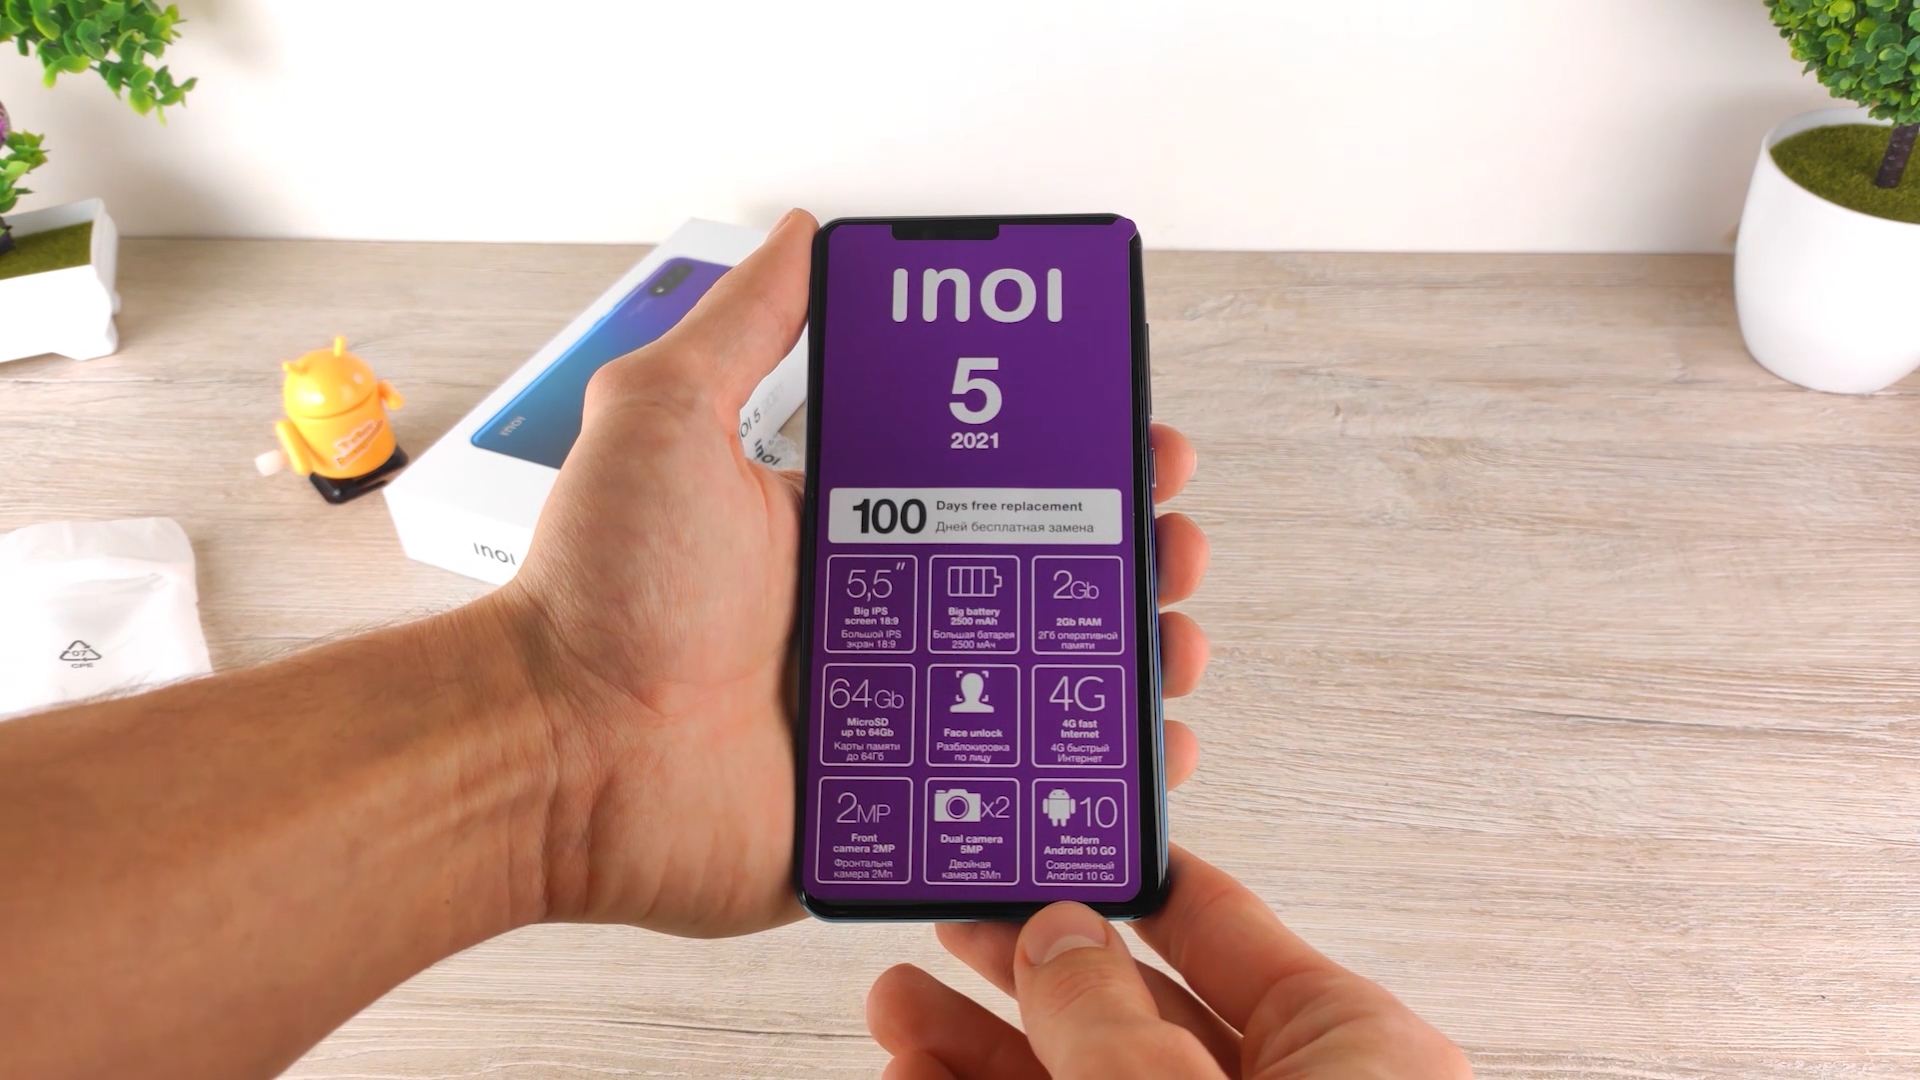 INOI 5 2021 в руке компактный смартфон